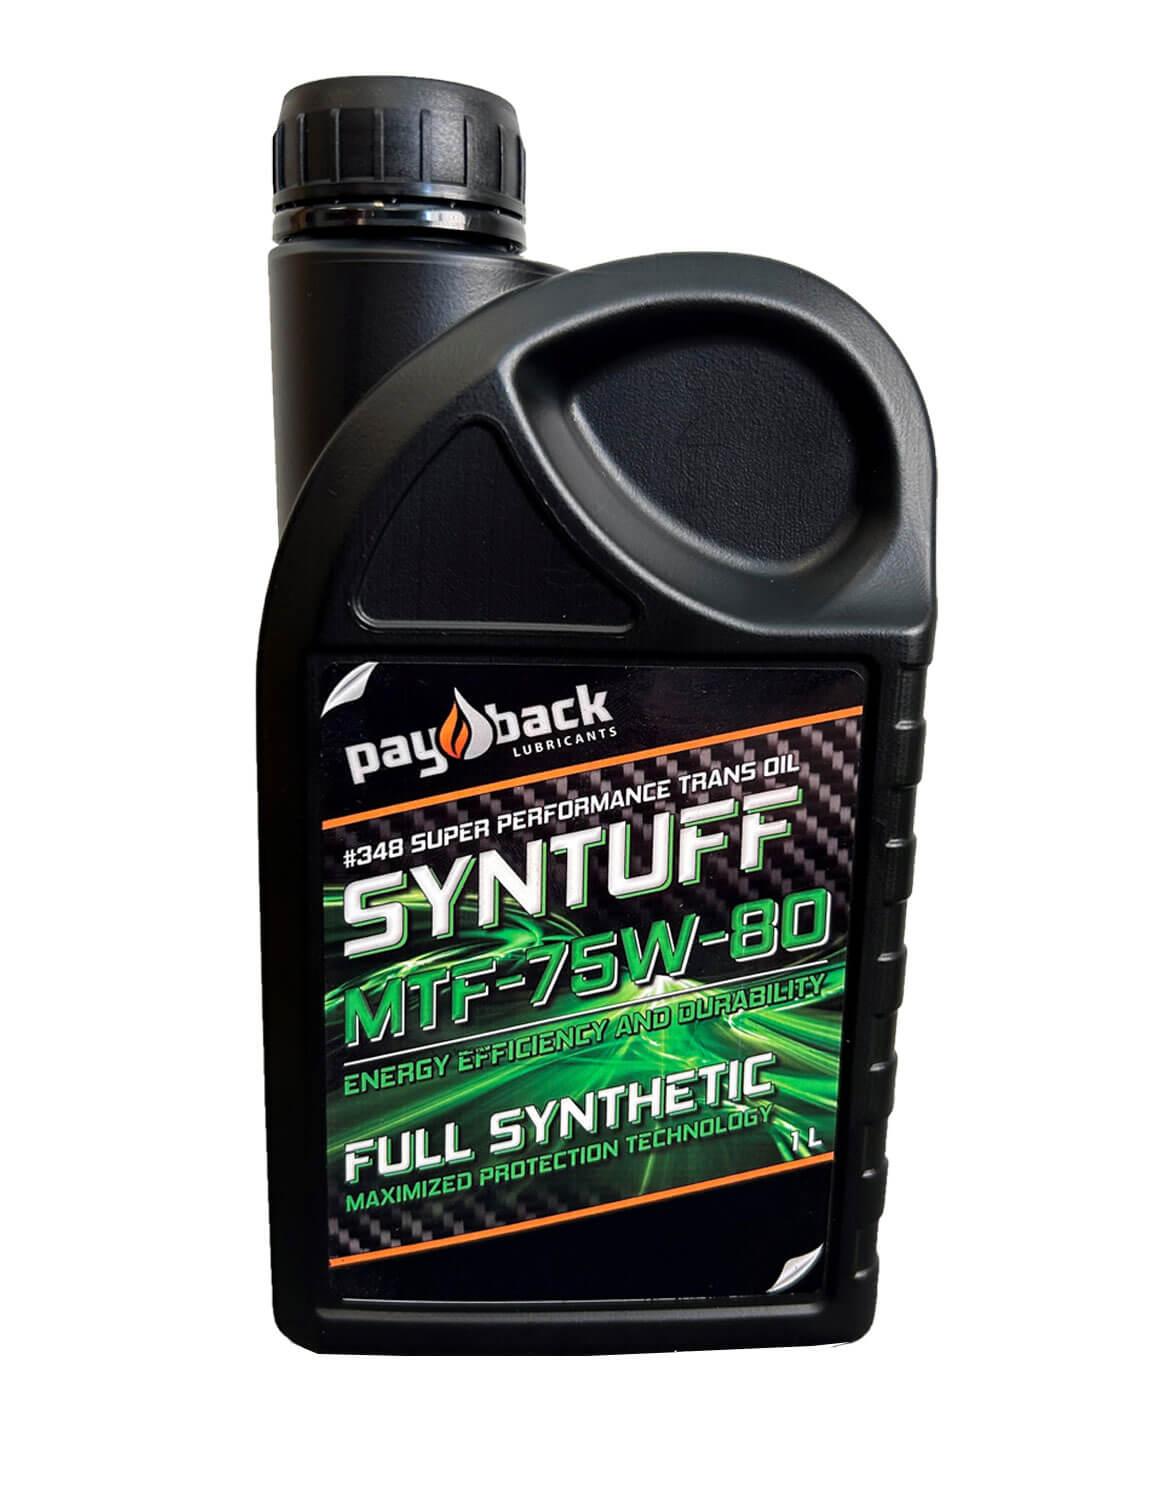 Payback Syntuff MTF-75W-80, 1 L